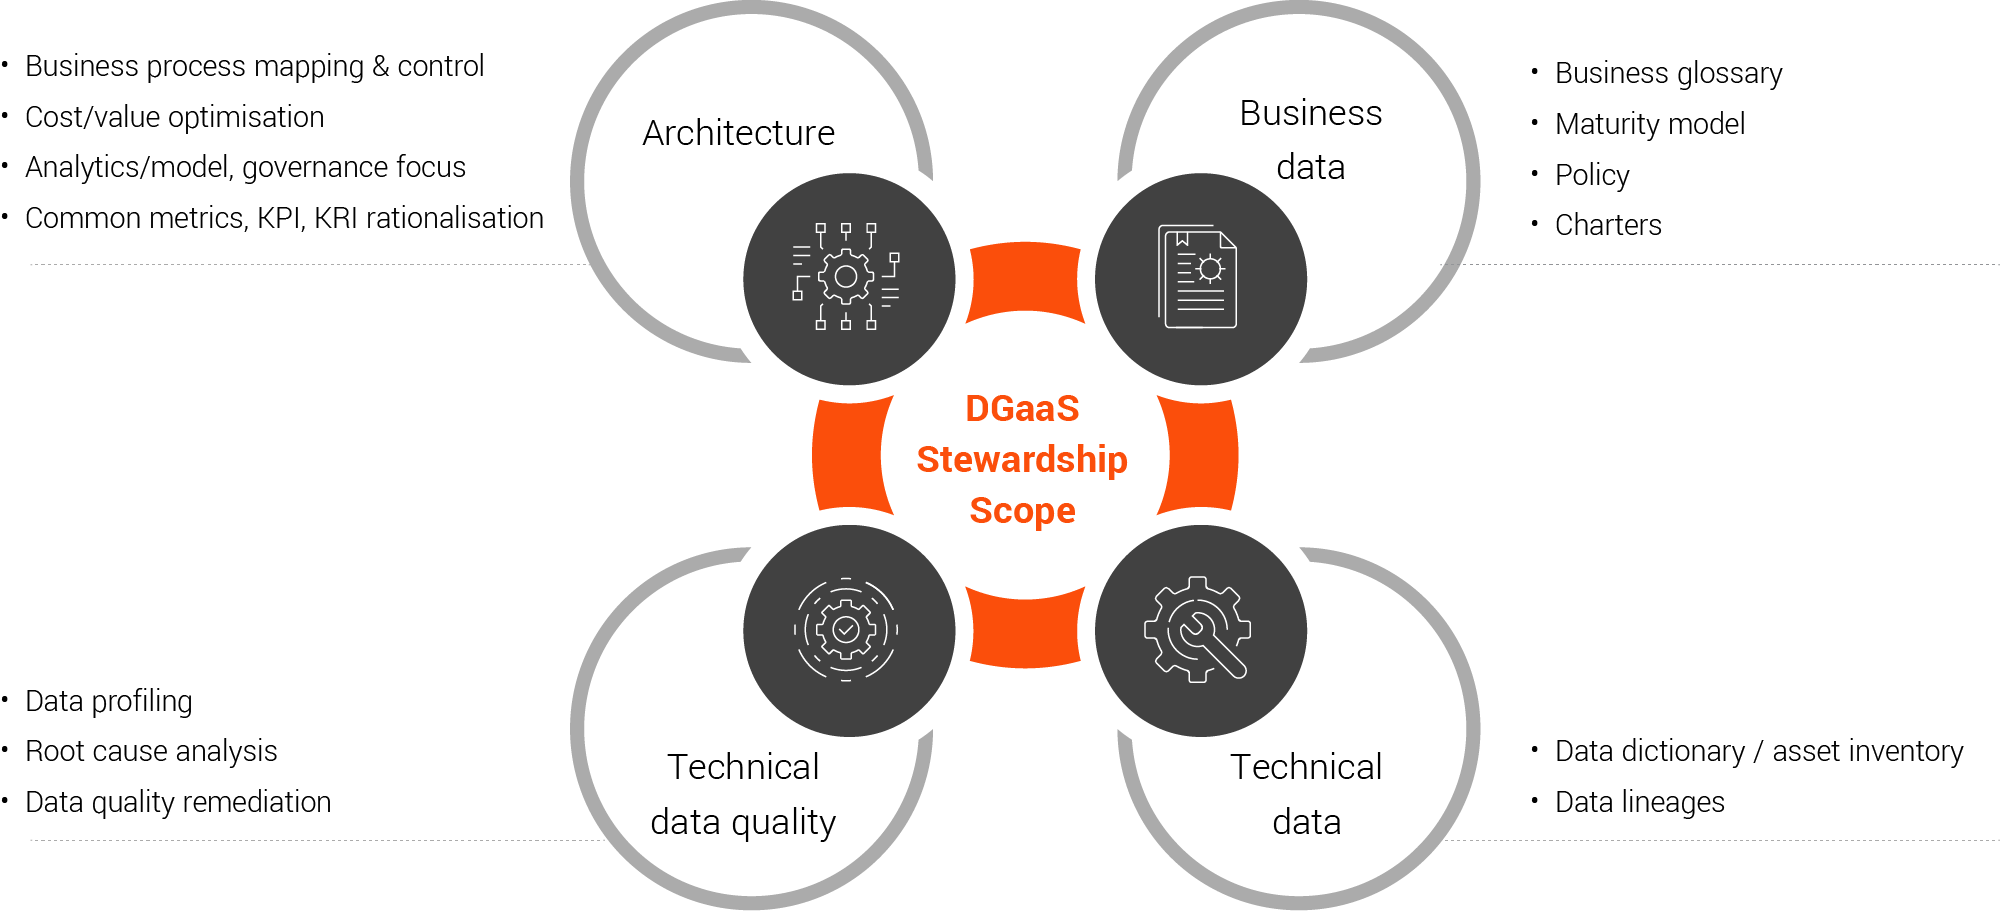 DGaaS Data Stewardship Scope